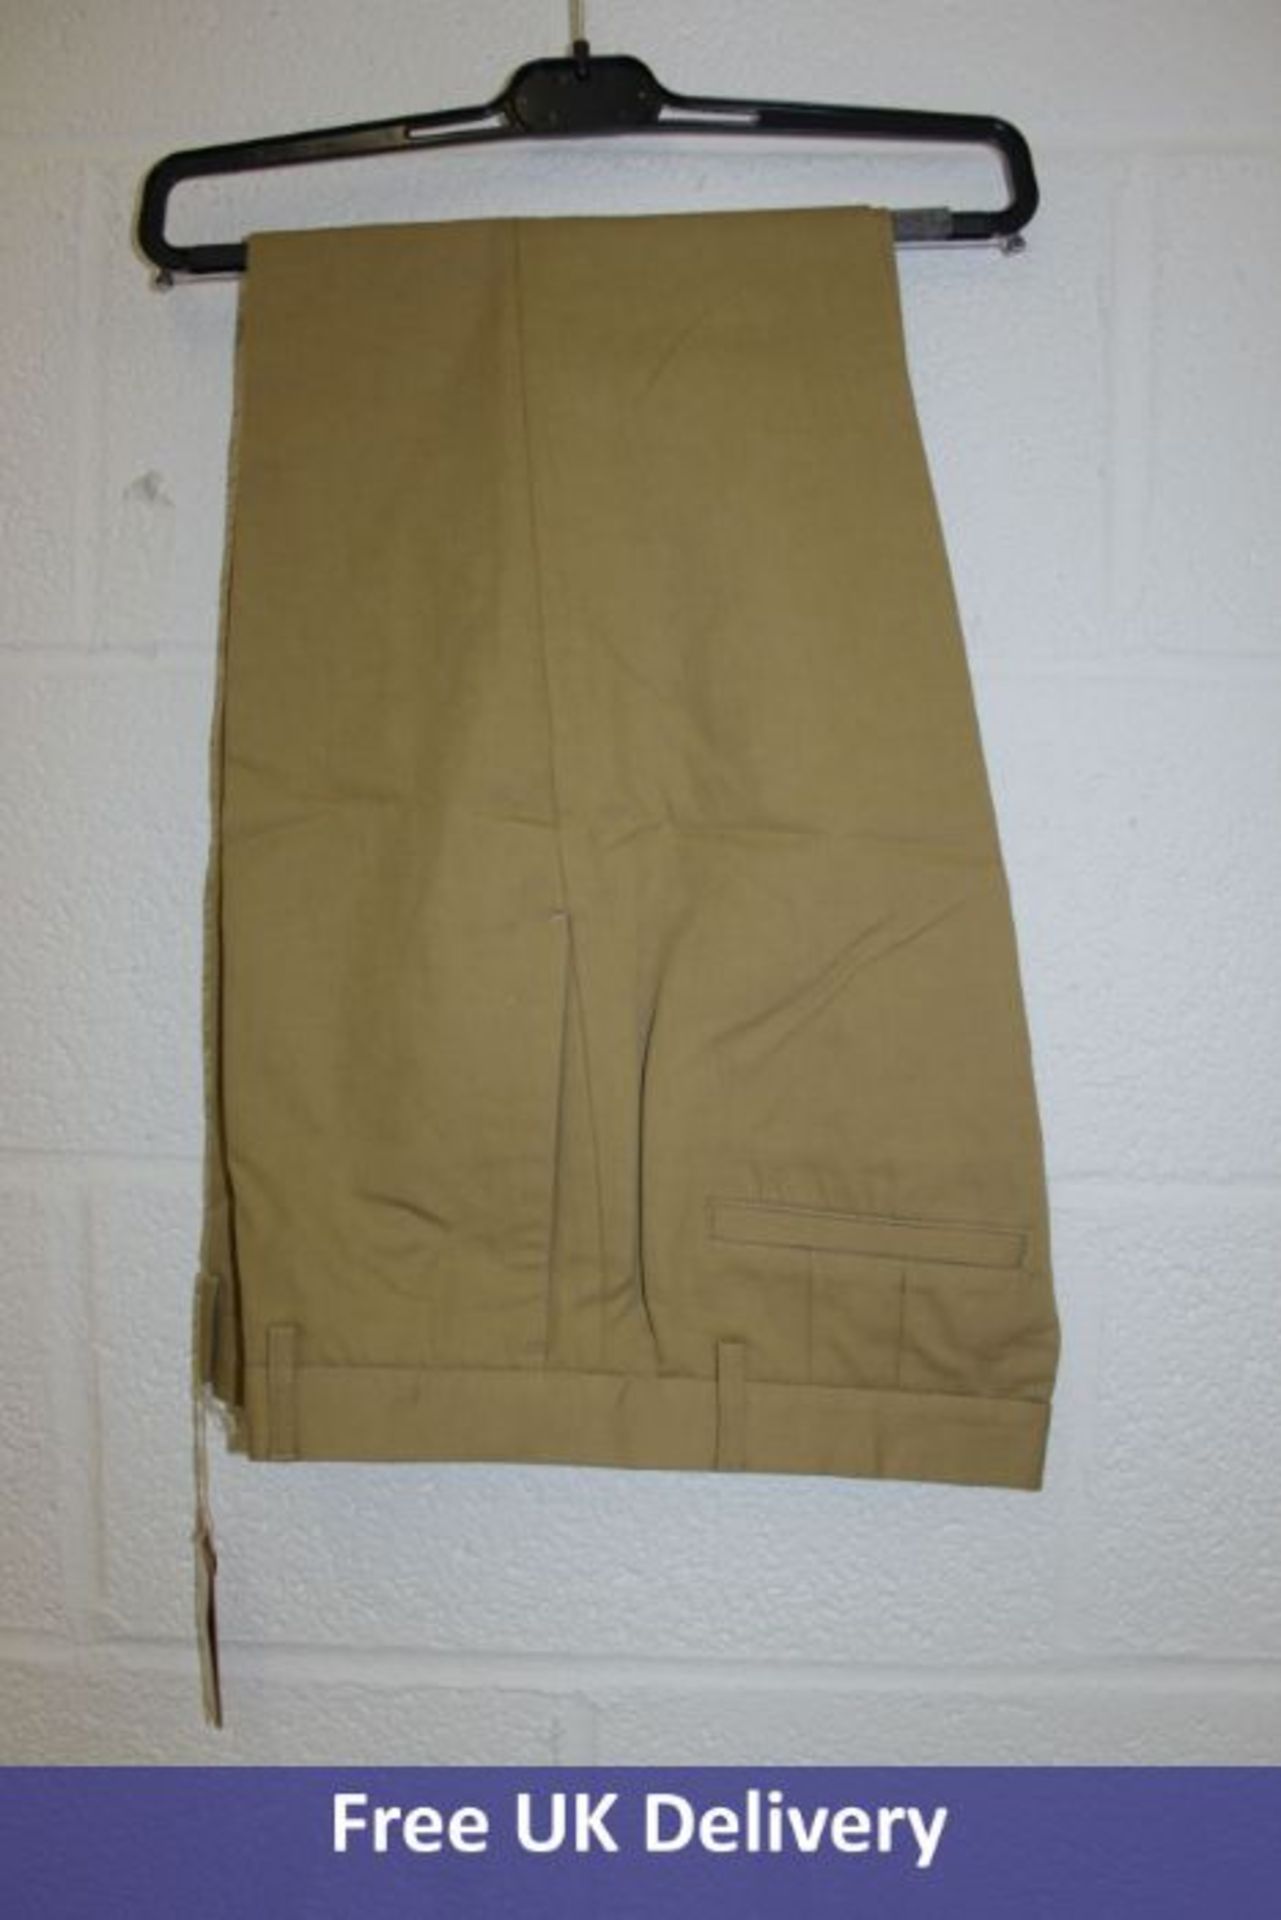 A.P.C Pantalon Raphaelle Men's Trousers, Beige, EU 40